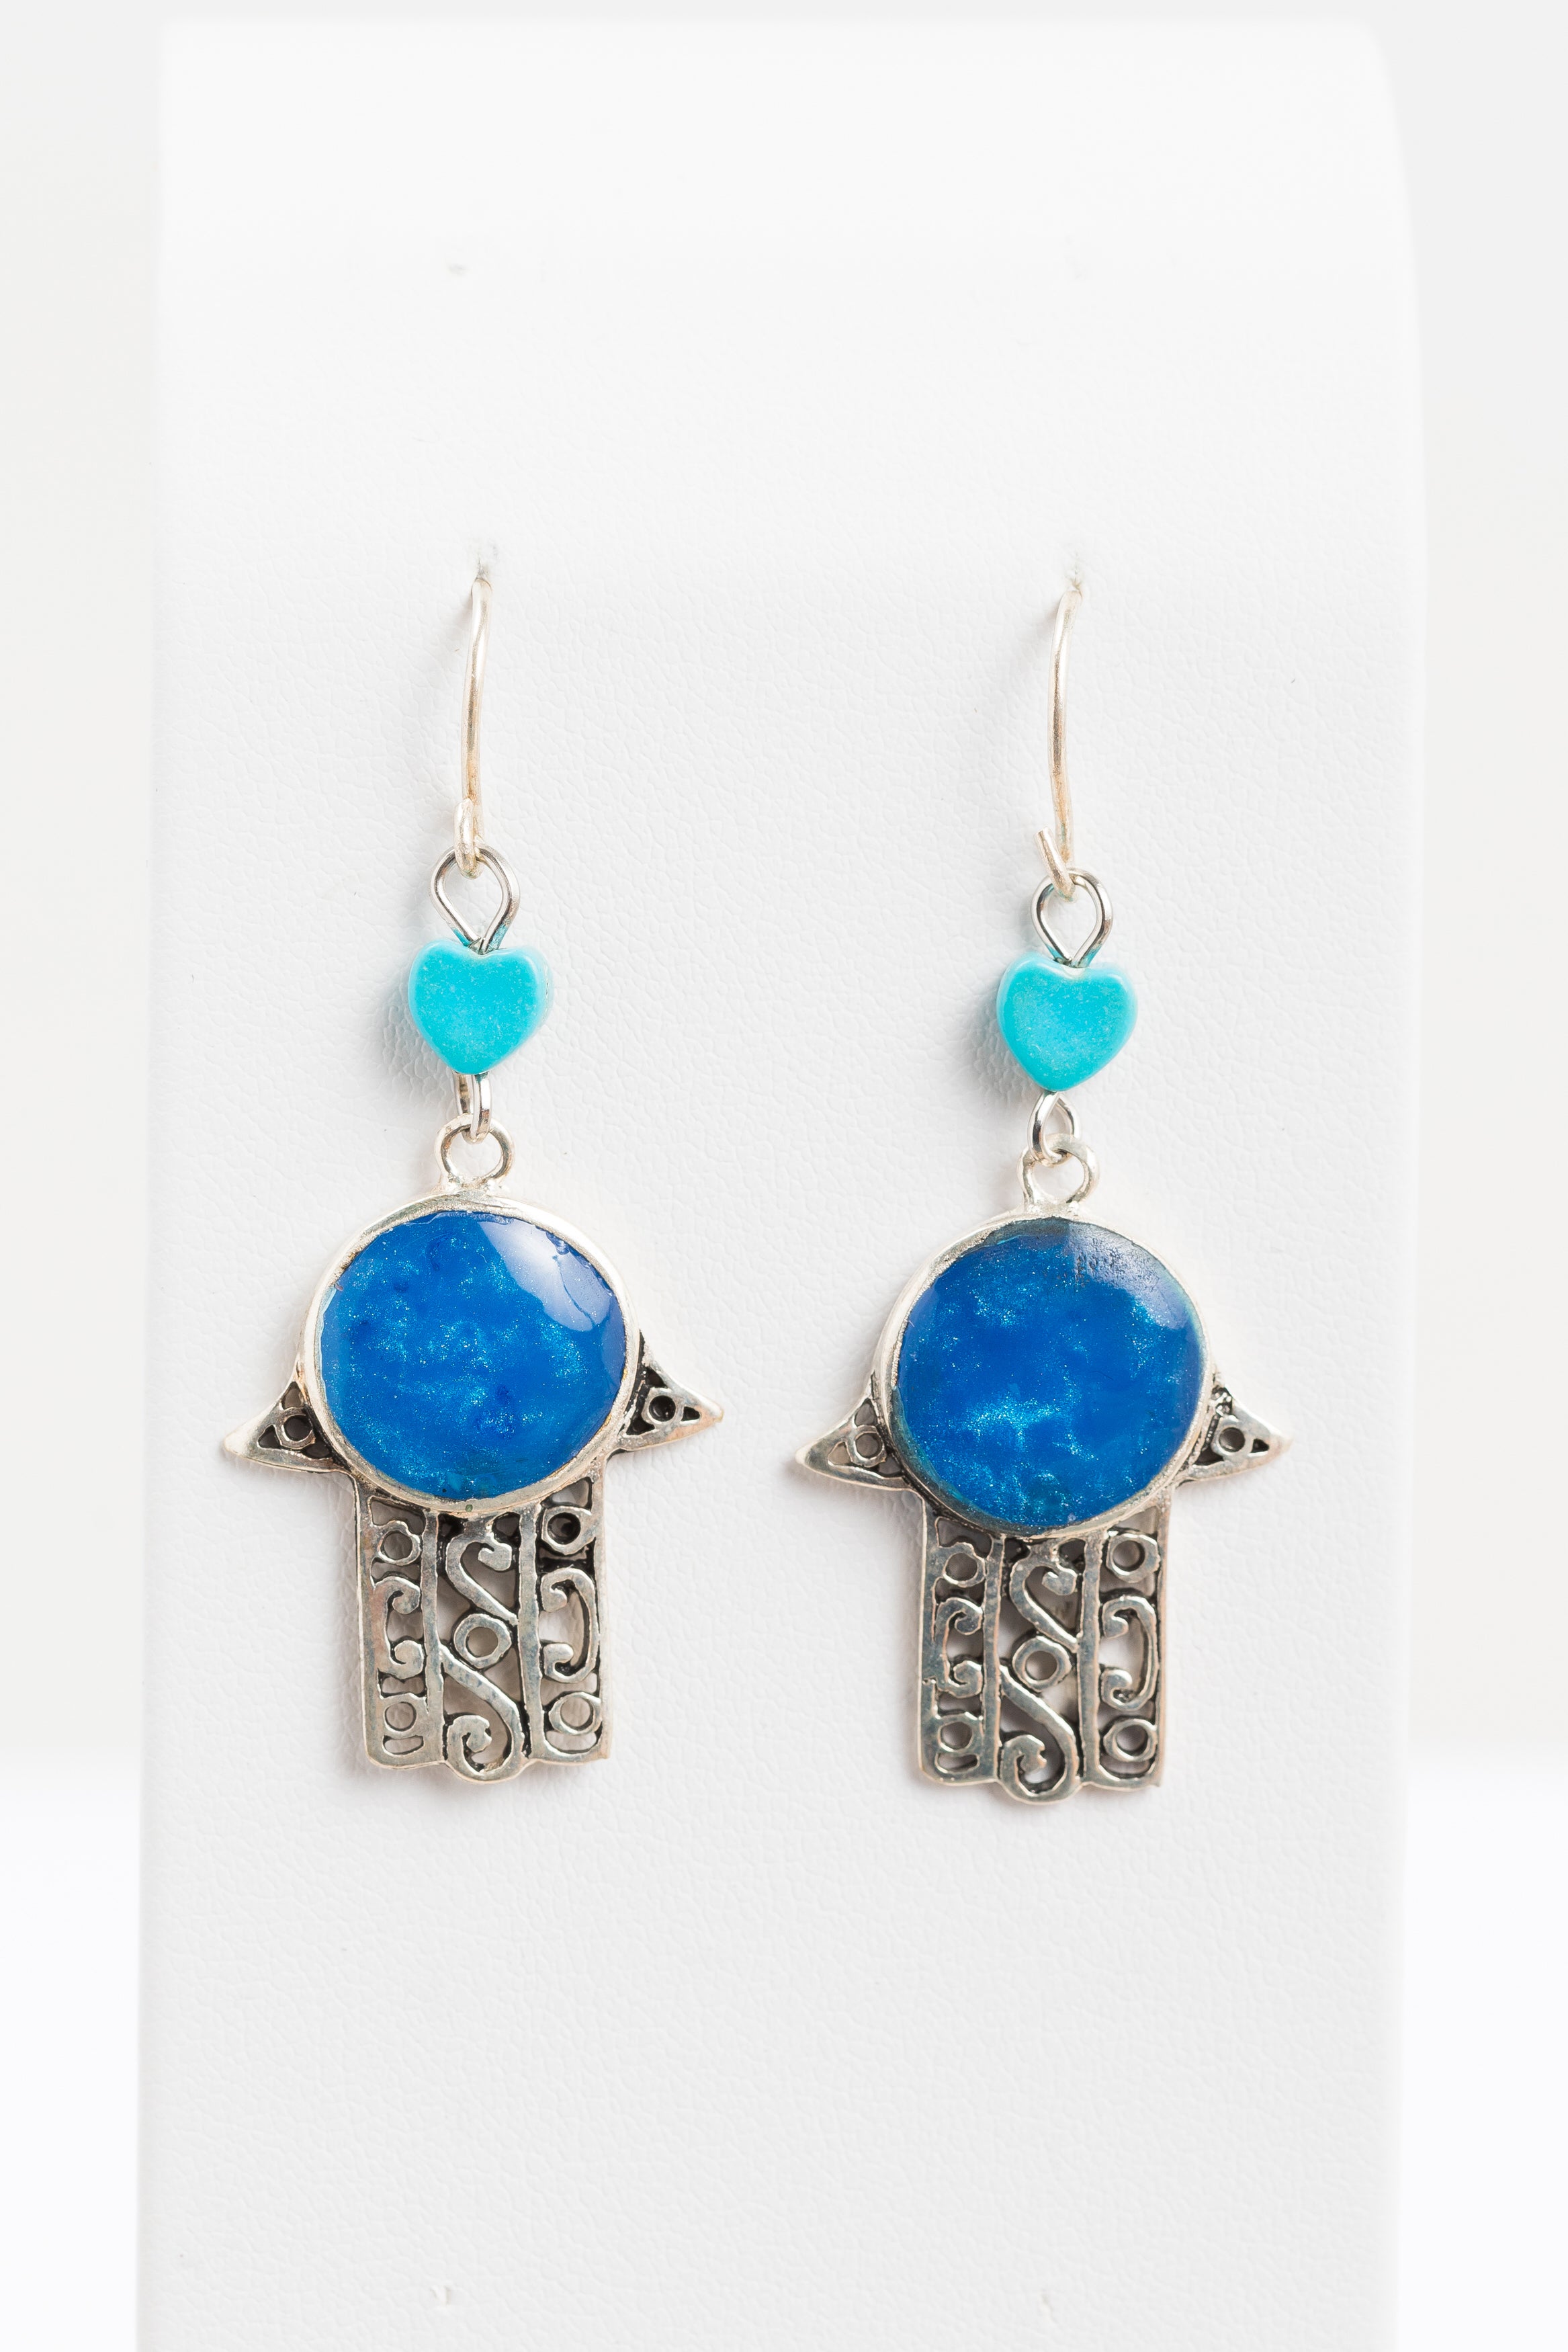 Larki Designs Silver & Blue Enamel Earrings